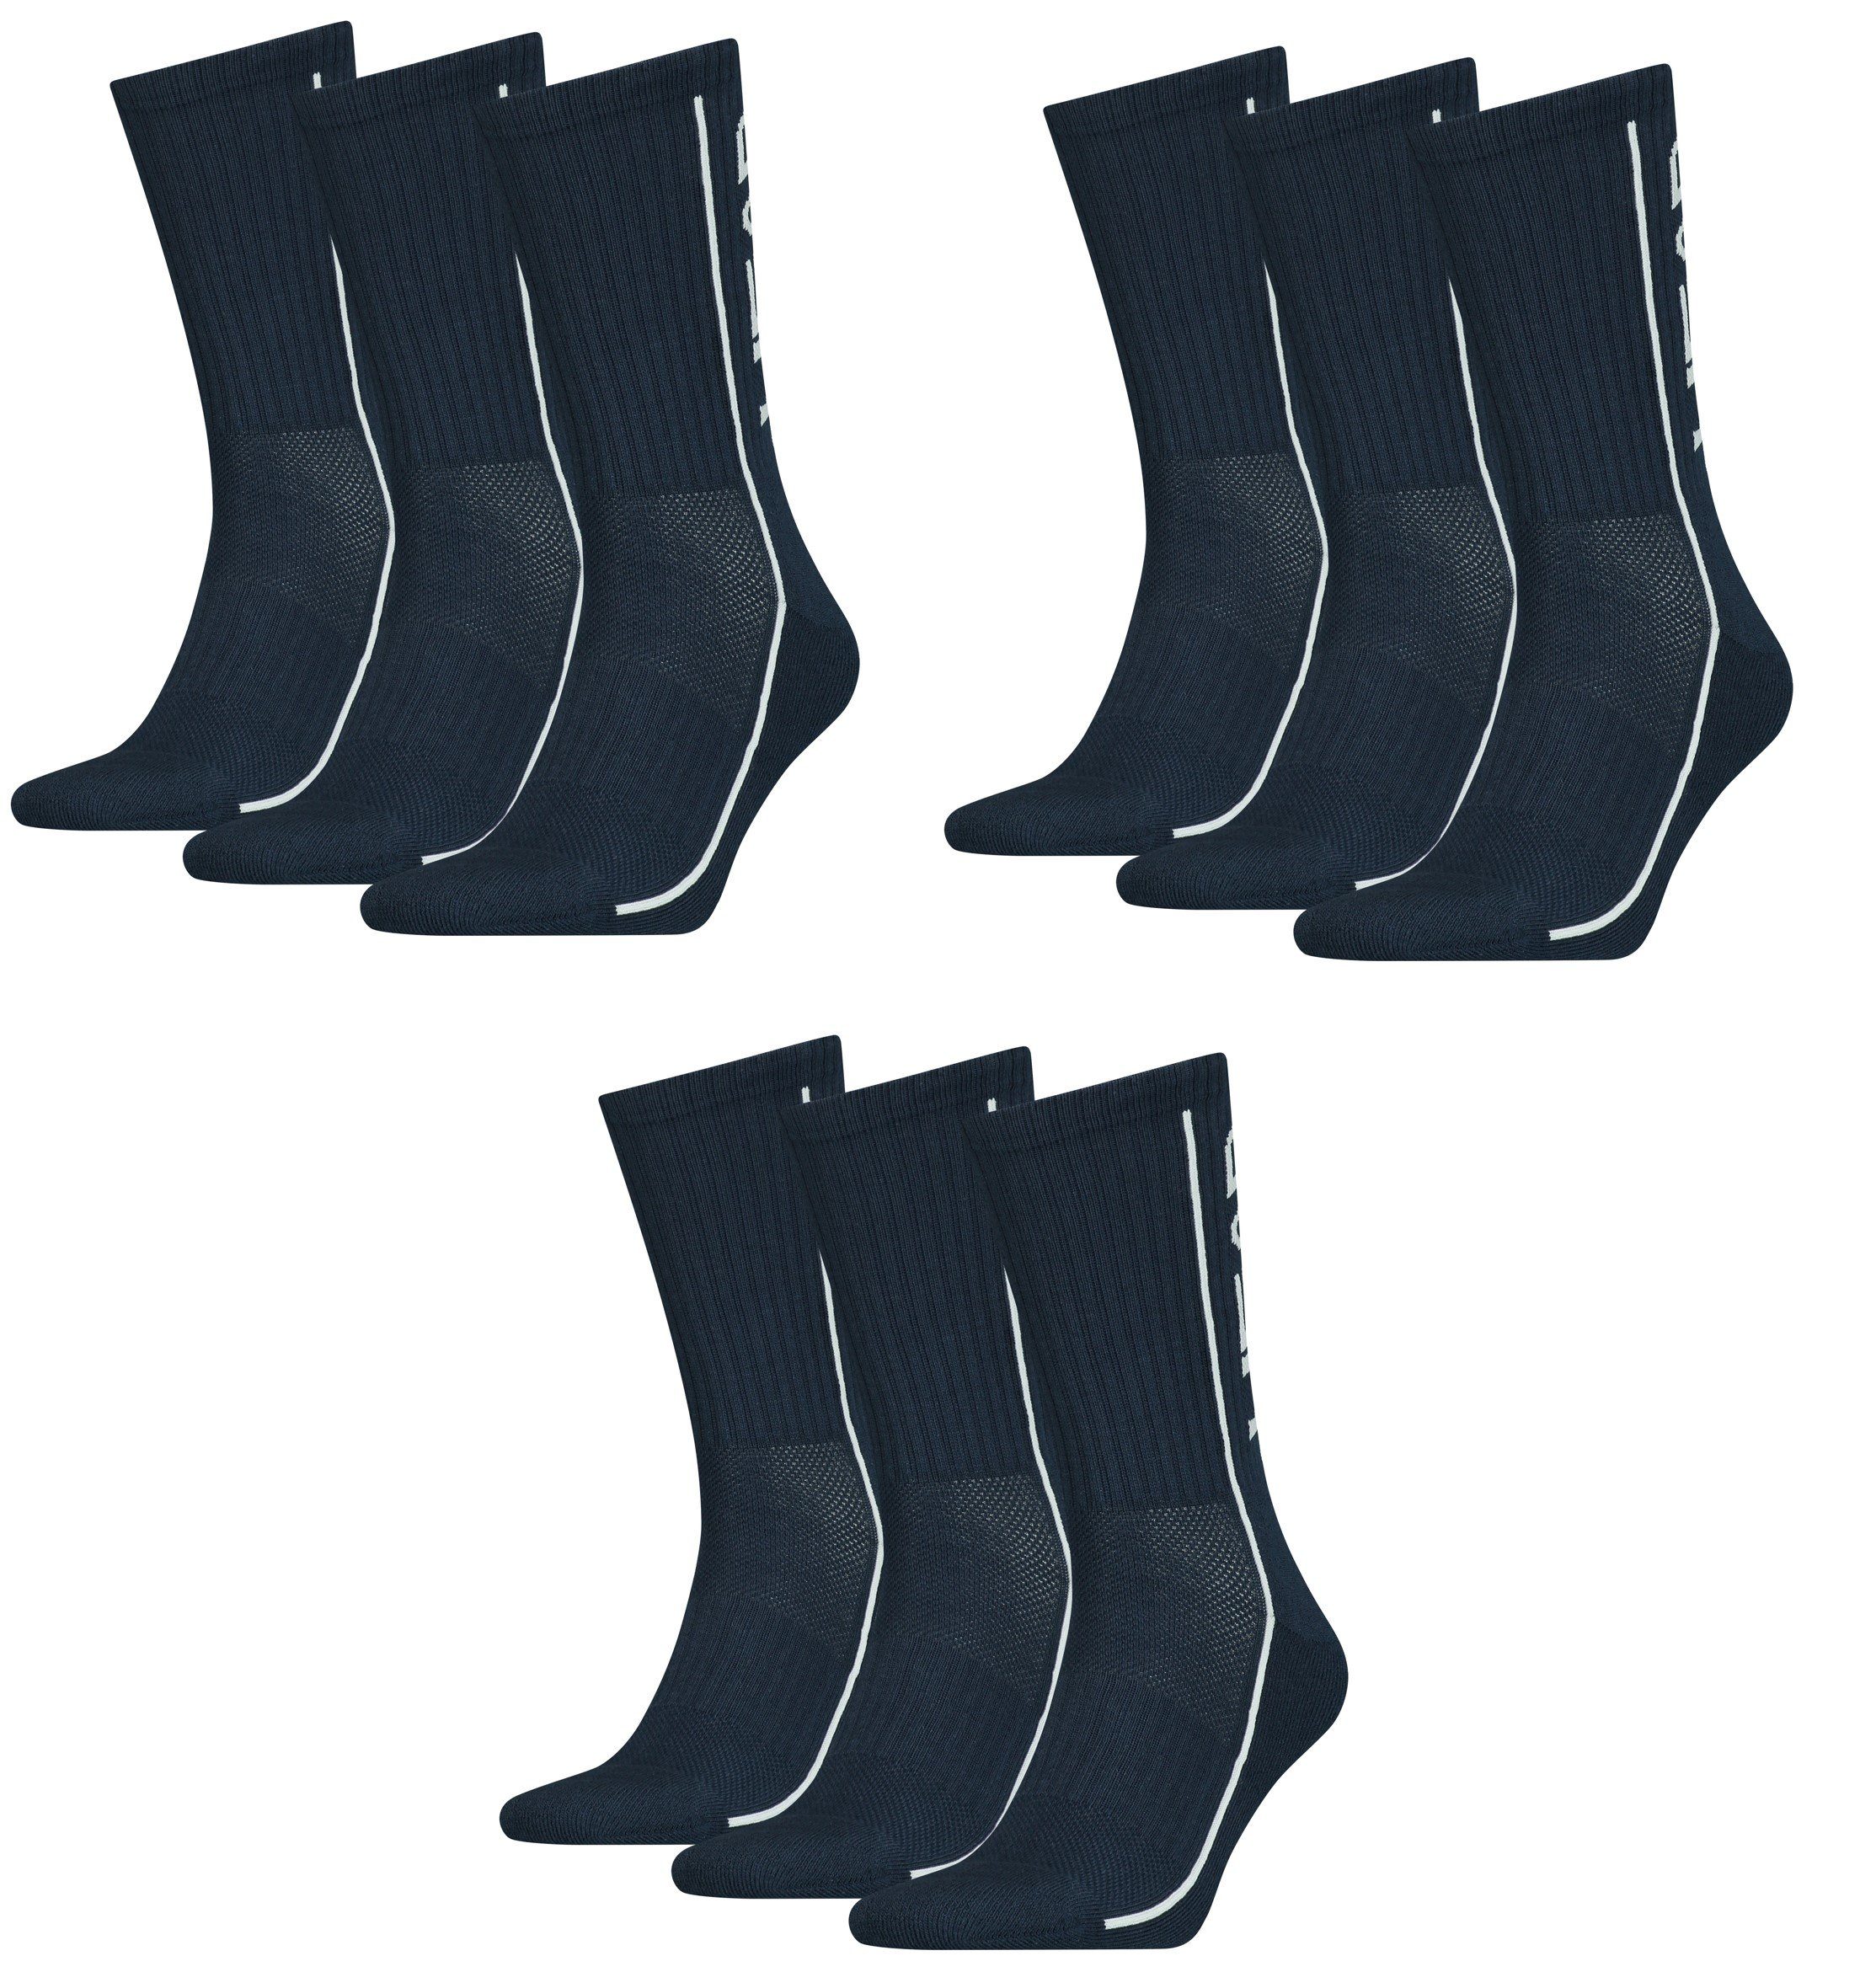 Head Freizeitsocken Head Sportsocken Performance Socken unisex 9er Pack (9 Paar) Polsterung im Fußbereich Navy